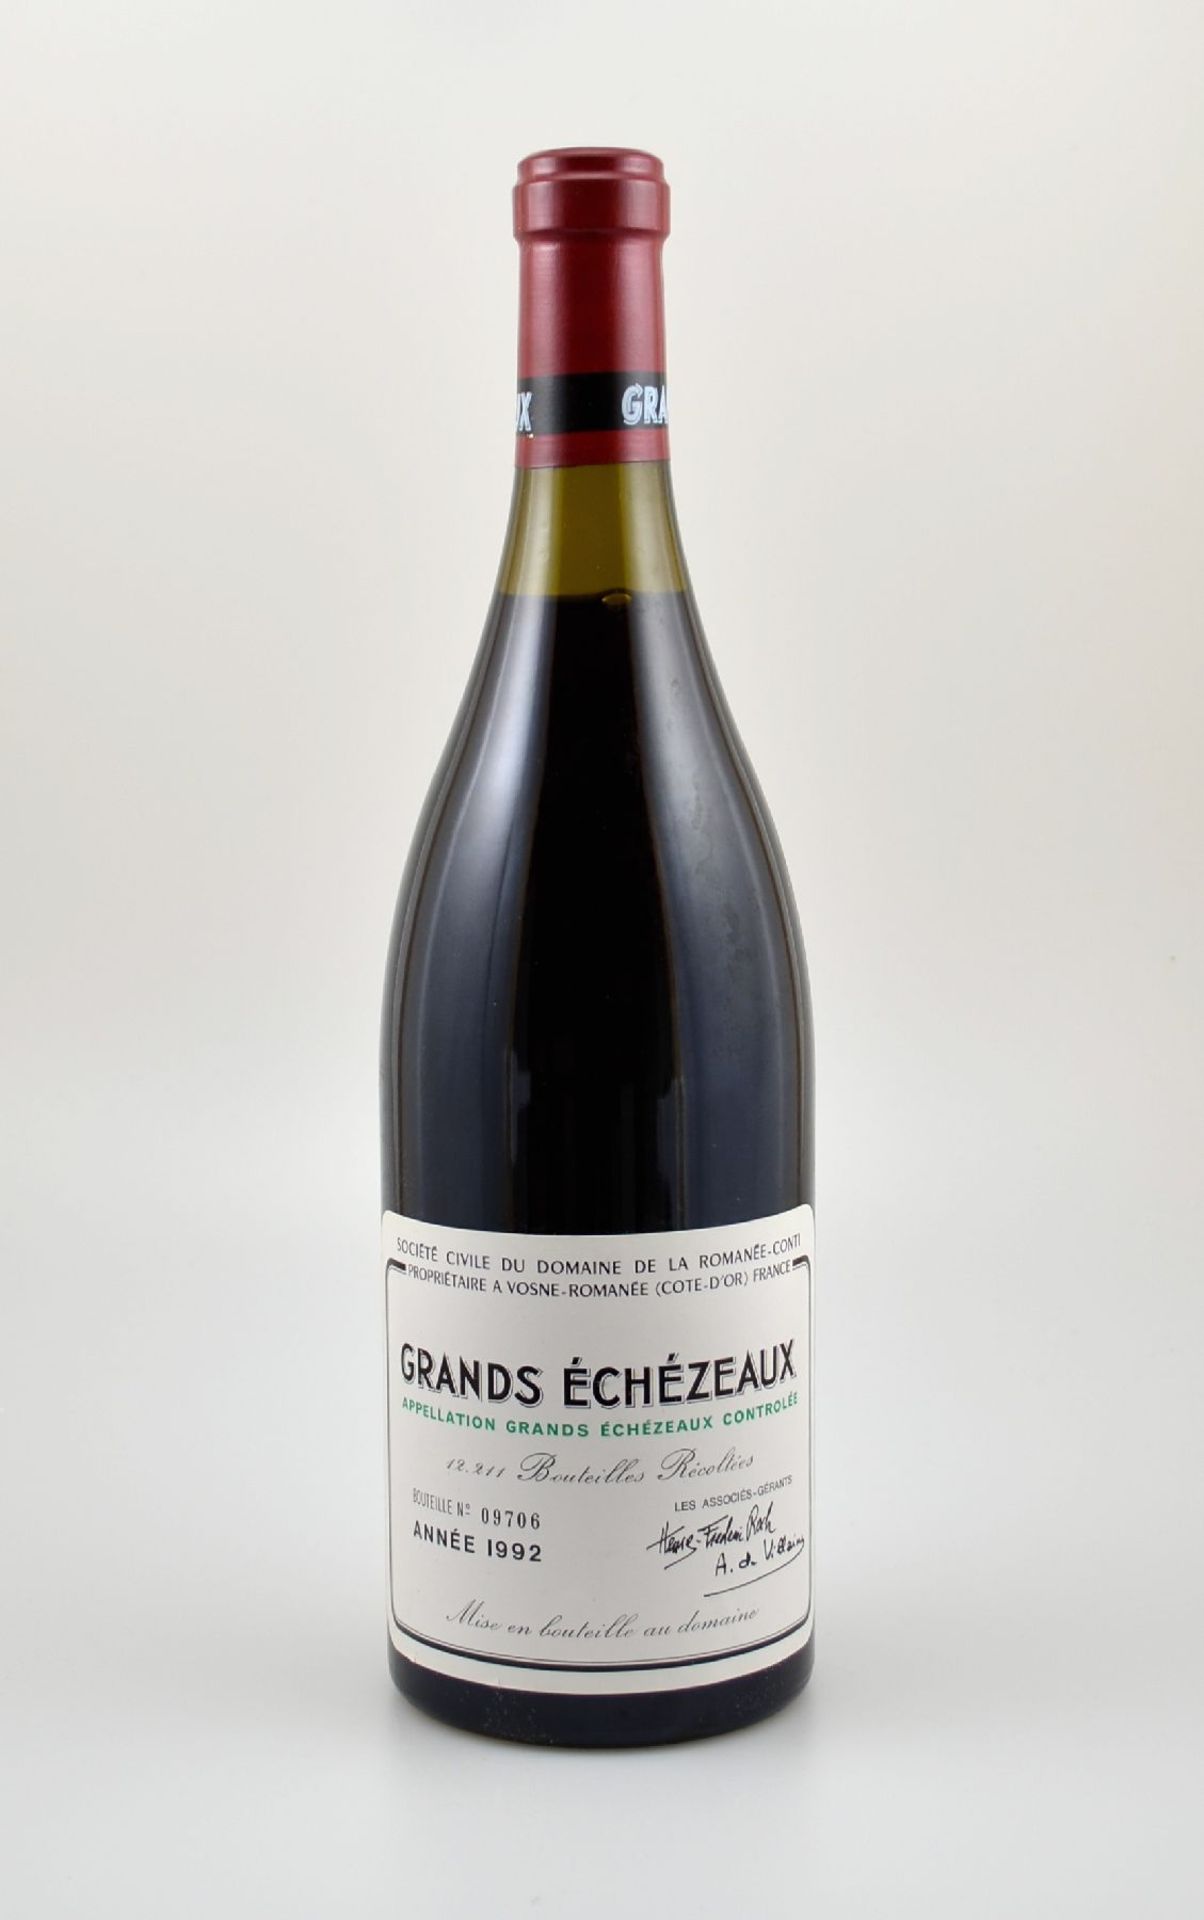 1 Flasche 1992 Grands Echezeaux Grand Cru, Domaine de La Romanee-Conti, ca. 75 cl, 13 % Vol.,